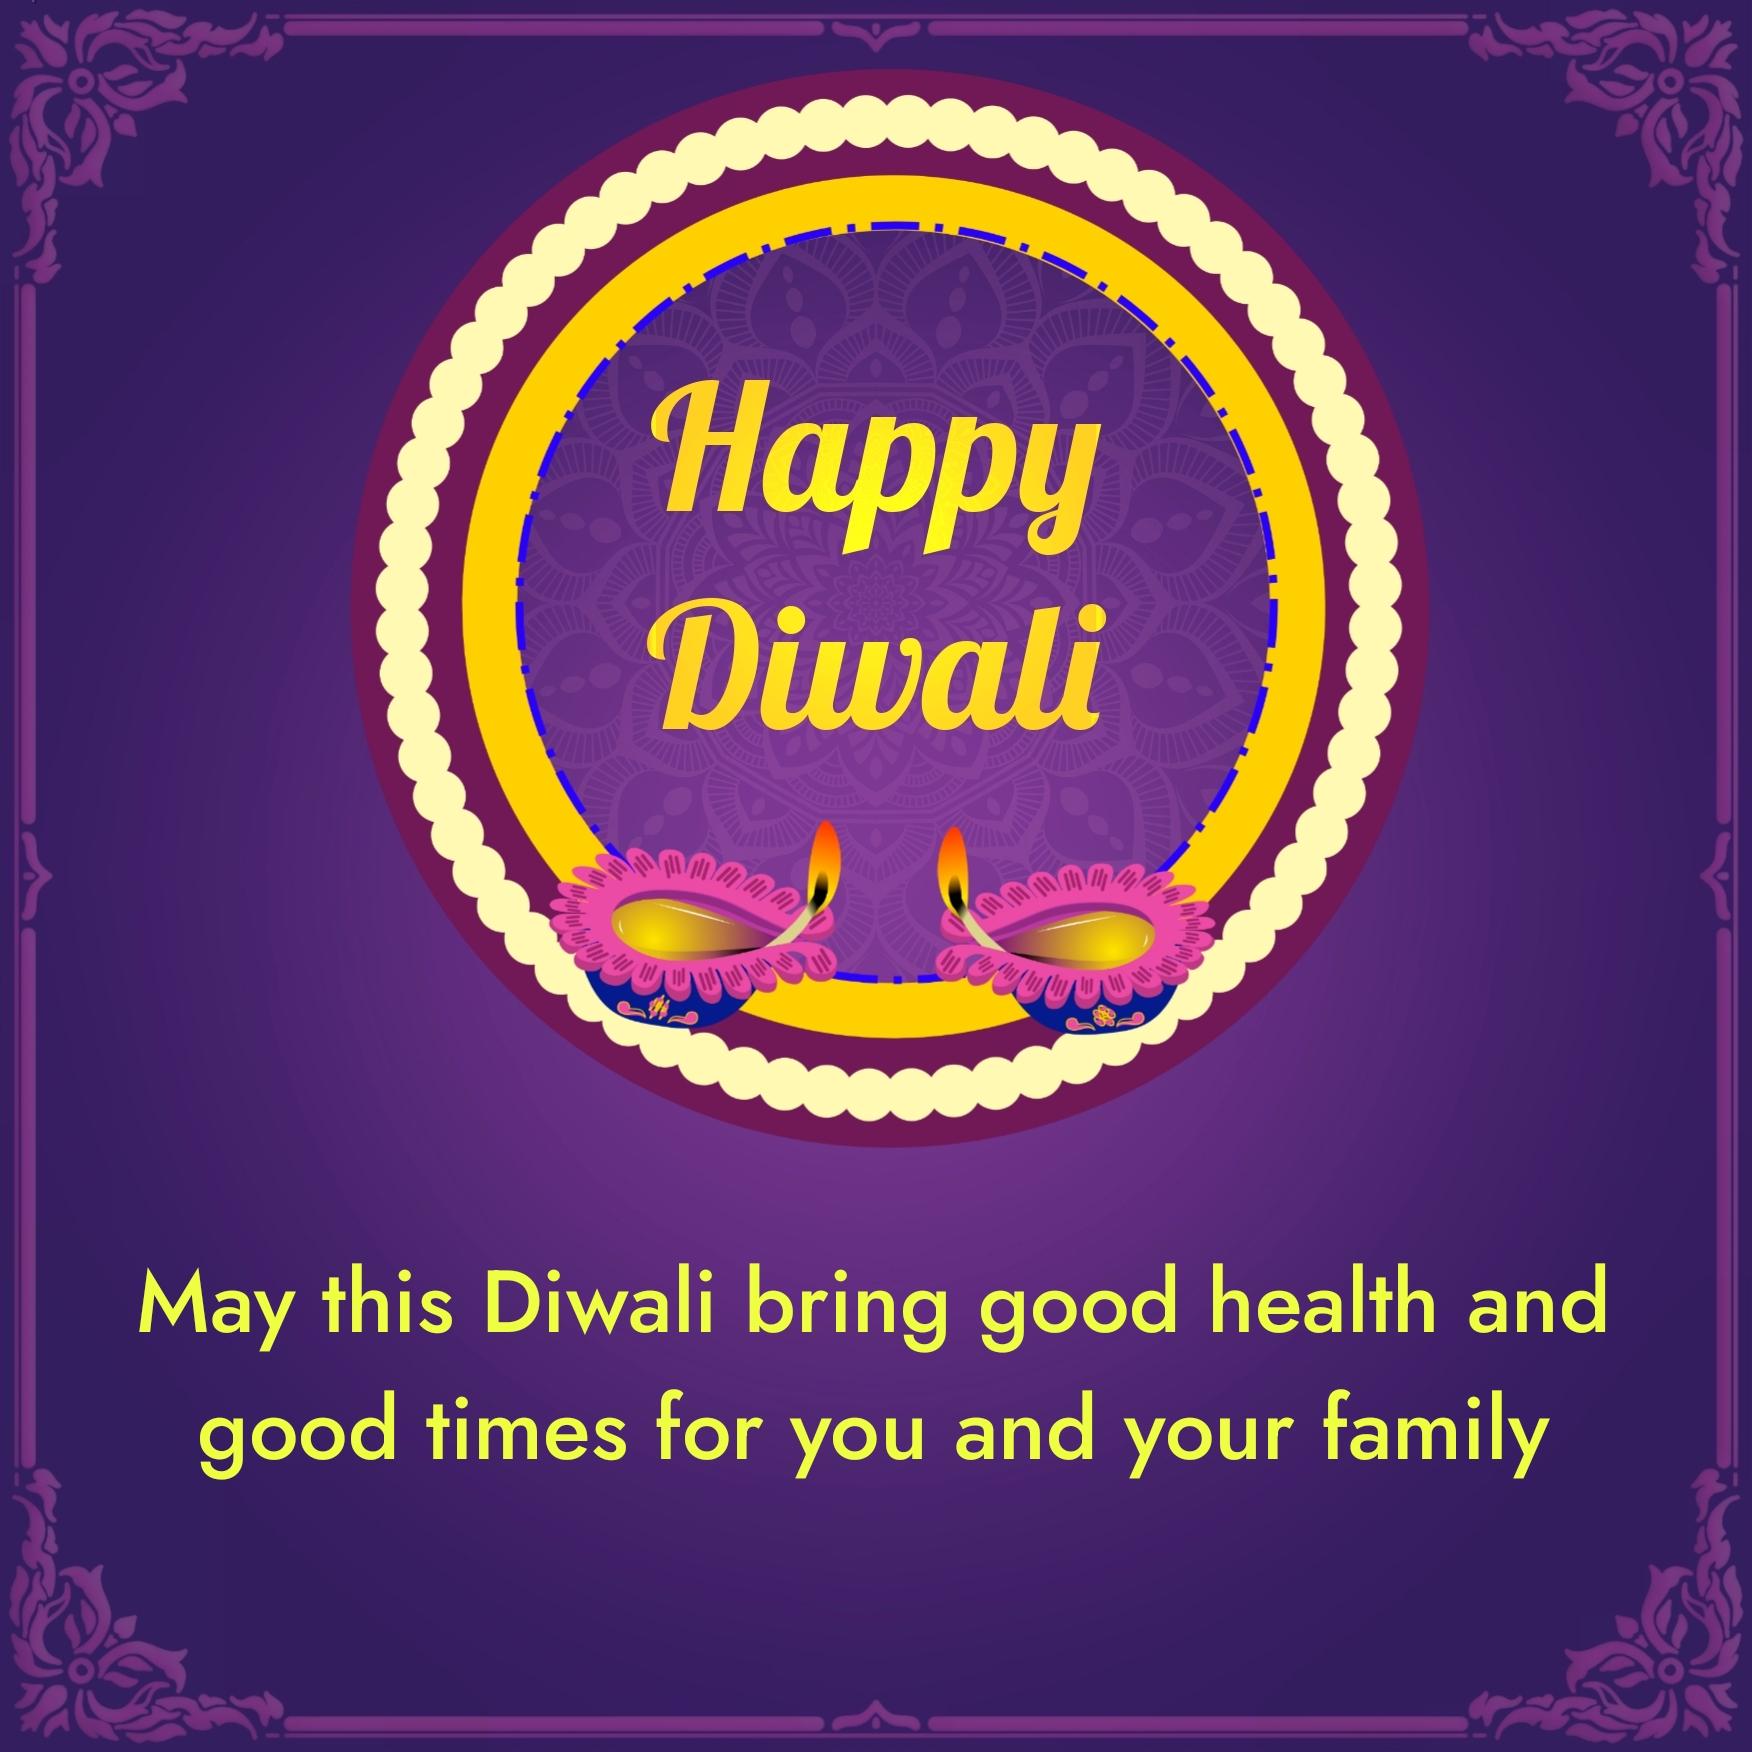 May this Diwali bring good health and good times